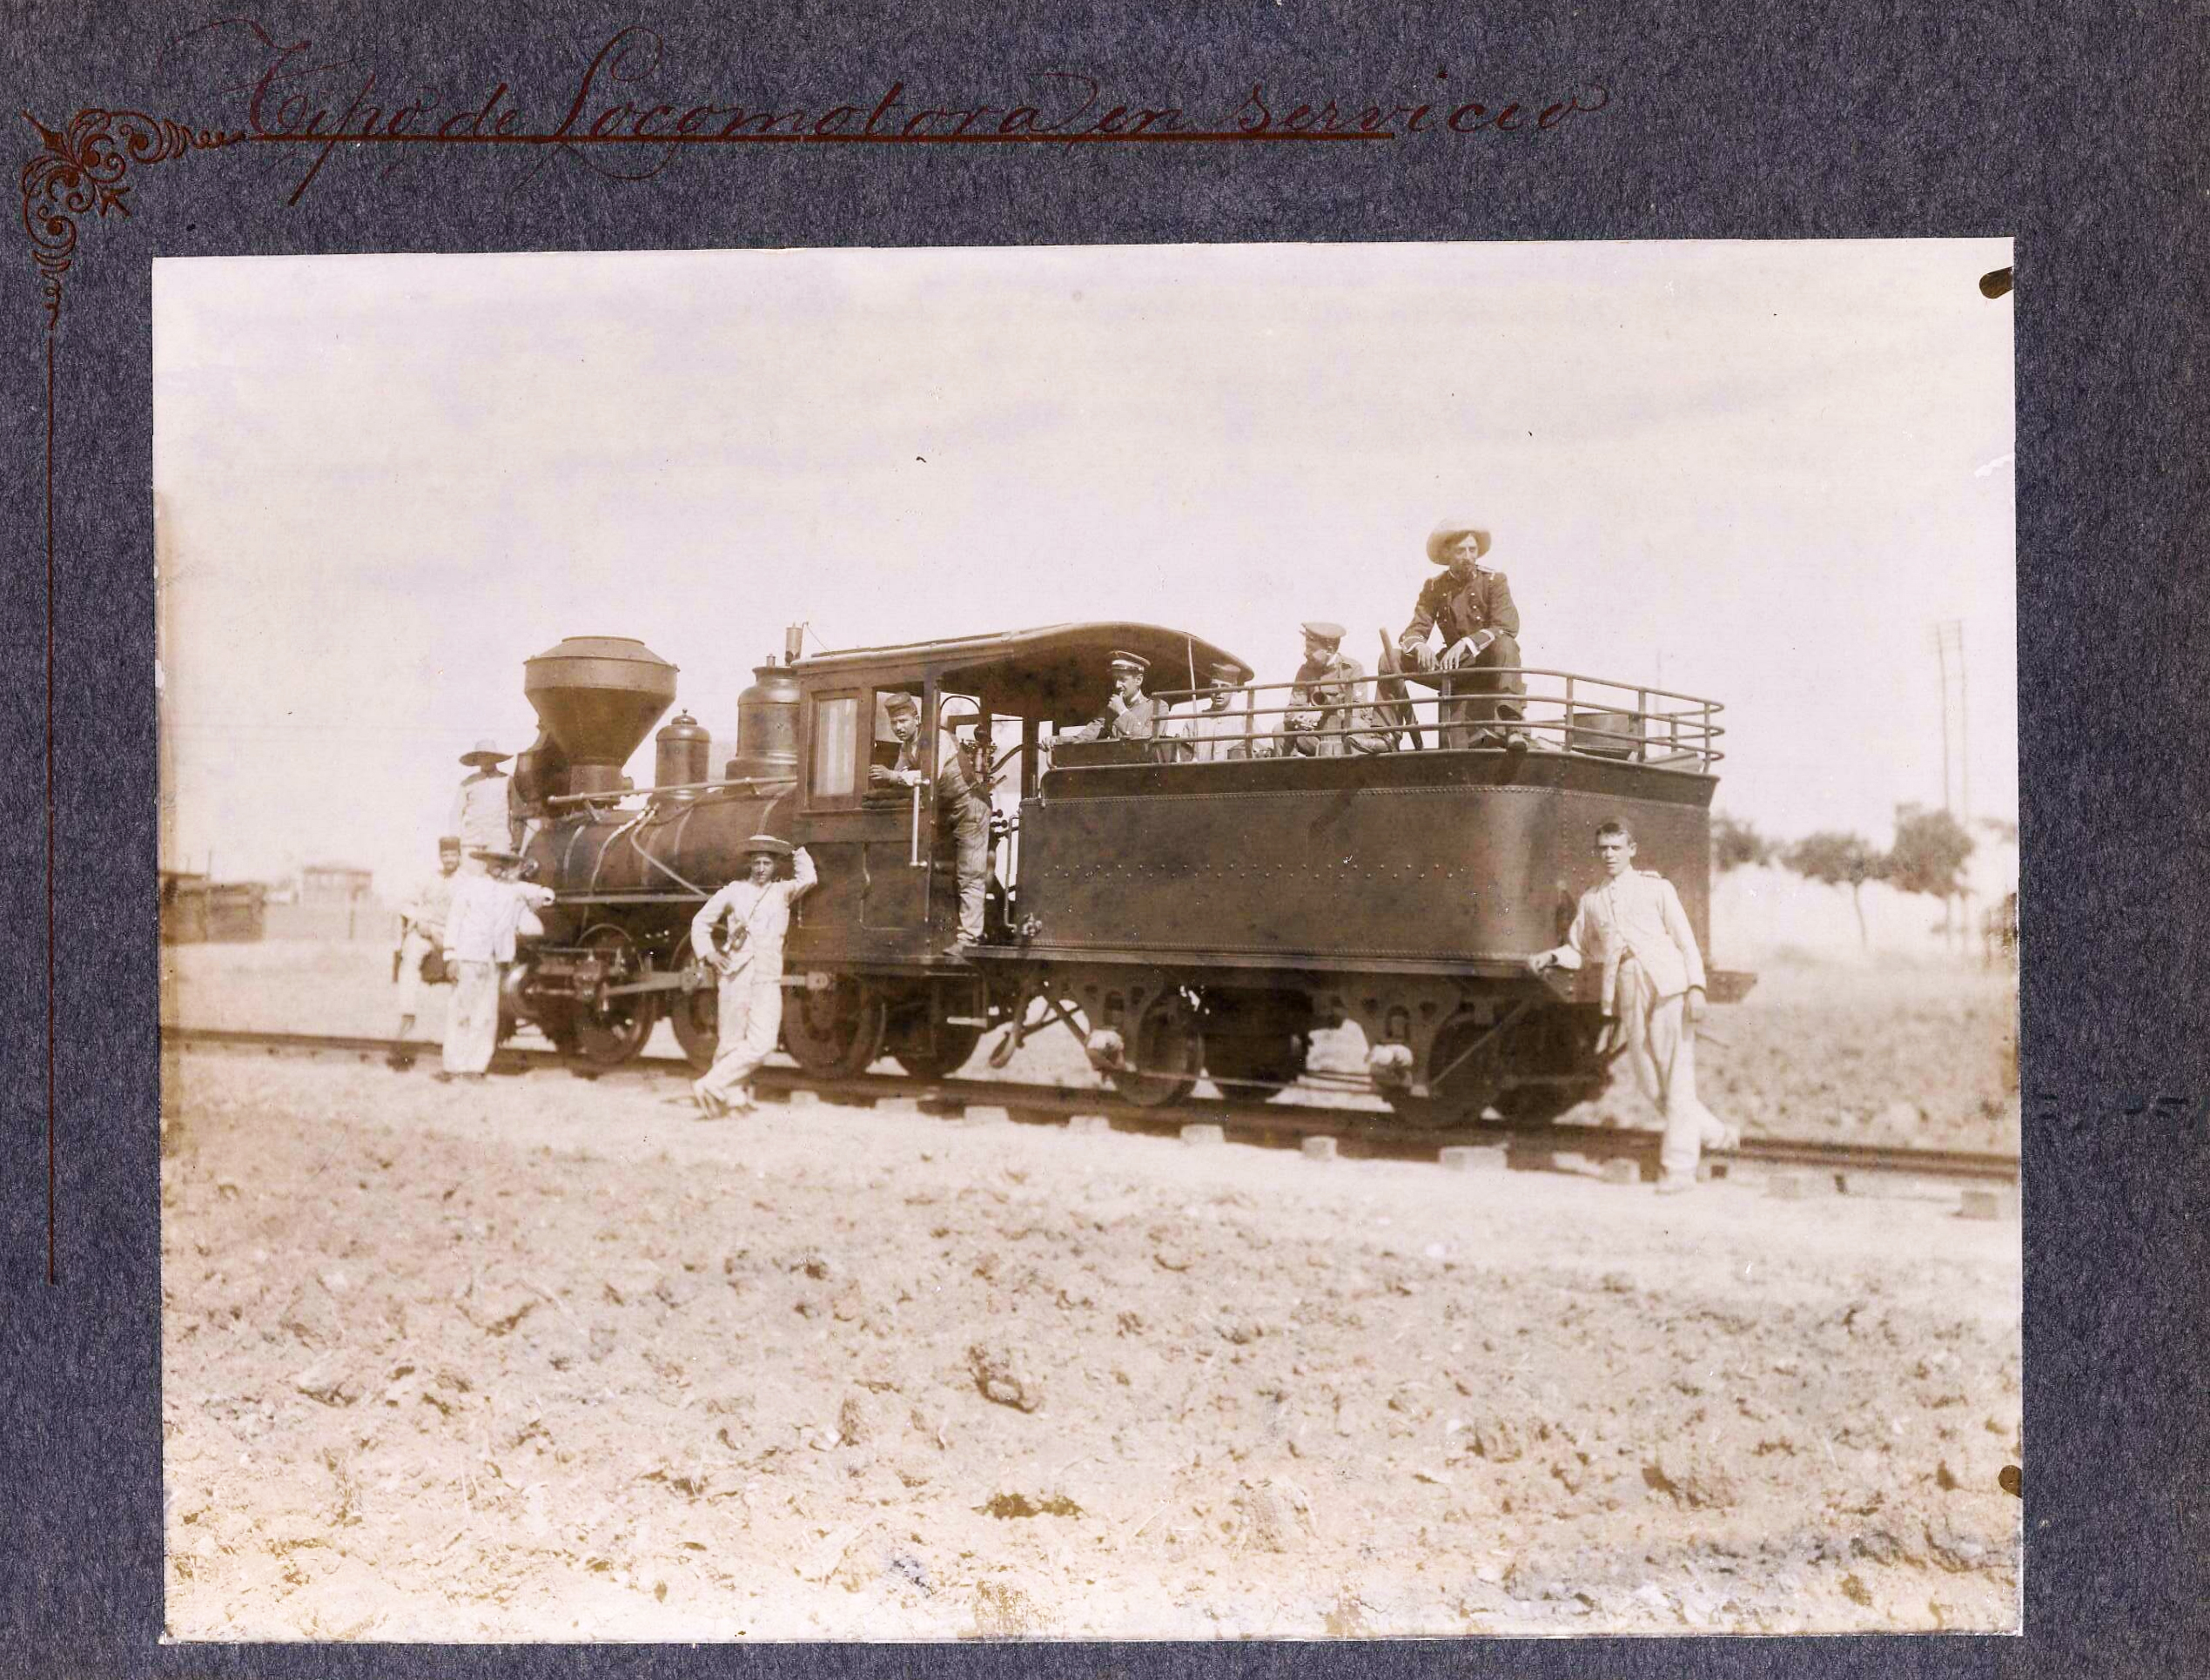 Locomotora en servicio, batallón de ferrocarriles, escuela práctica, Carabanchel, Madrid. 1907